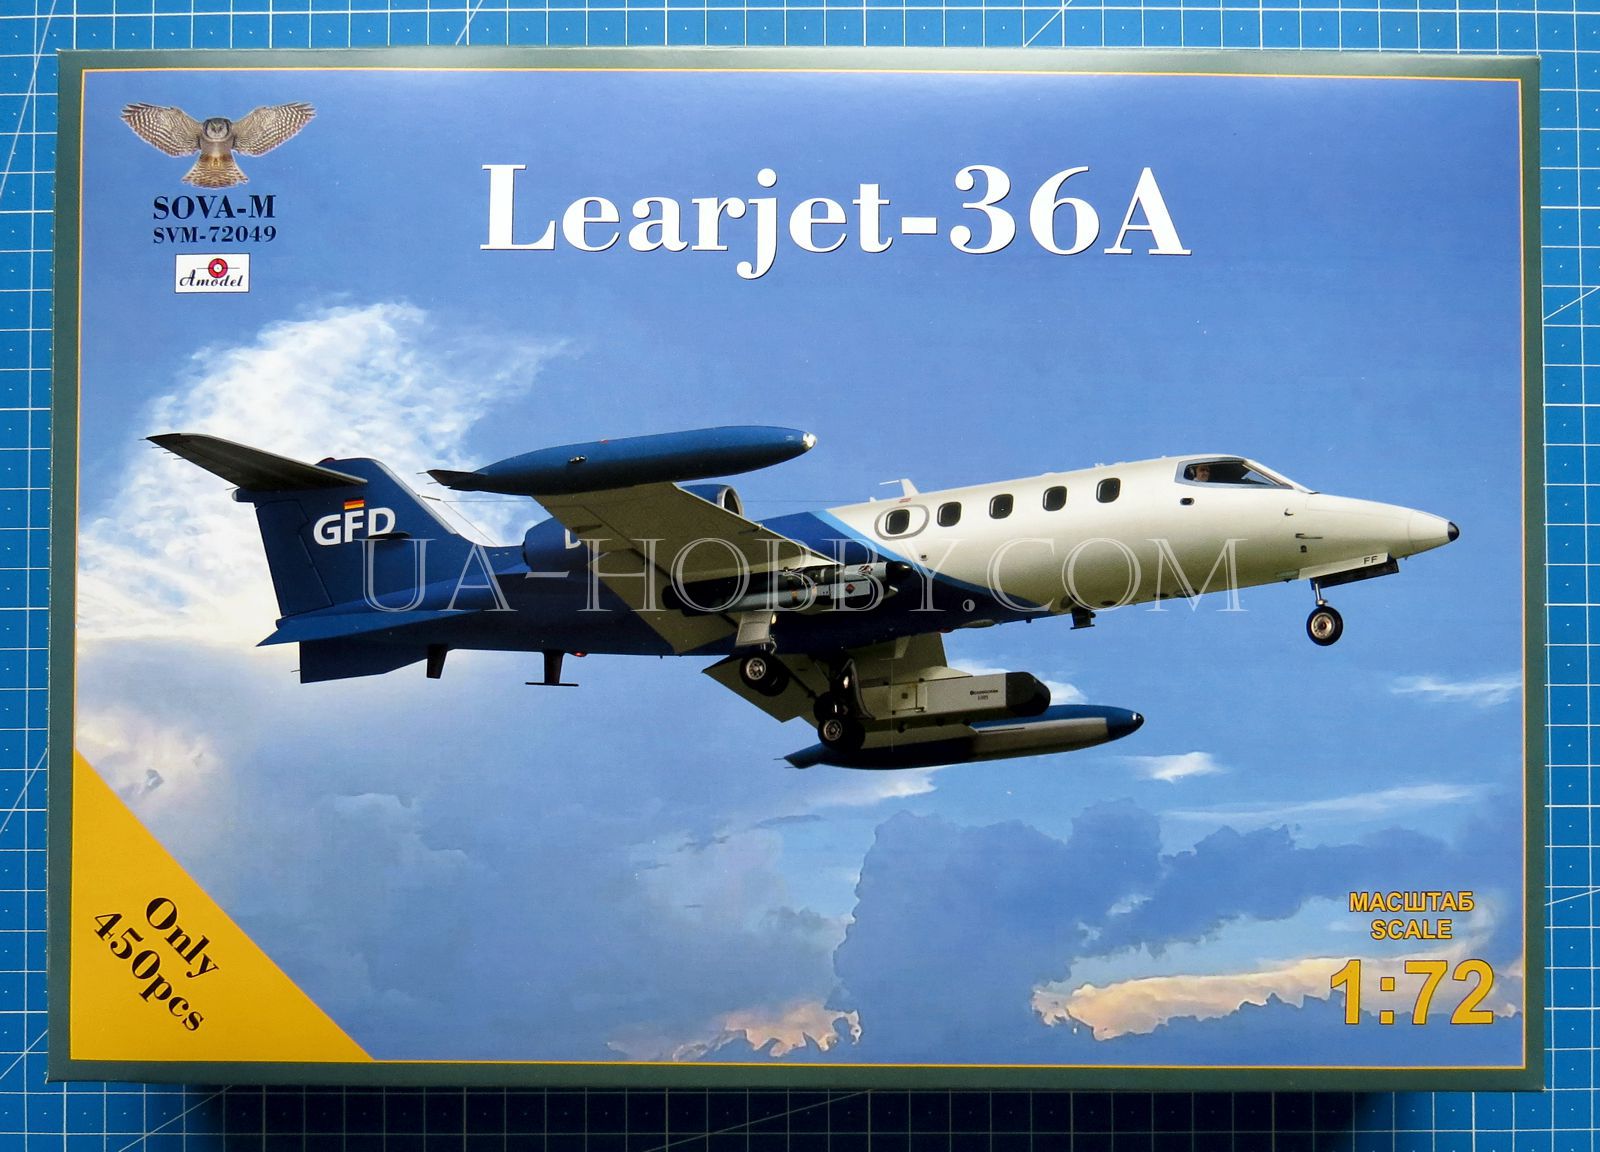 1/72 Learjet 36A GFD. SOVA-M SVM-72049 – UA-hobby